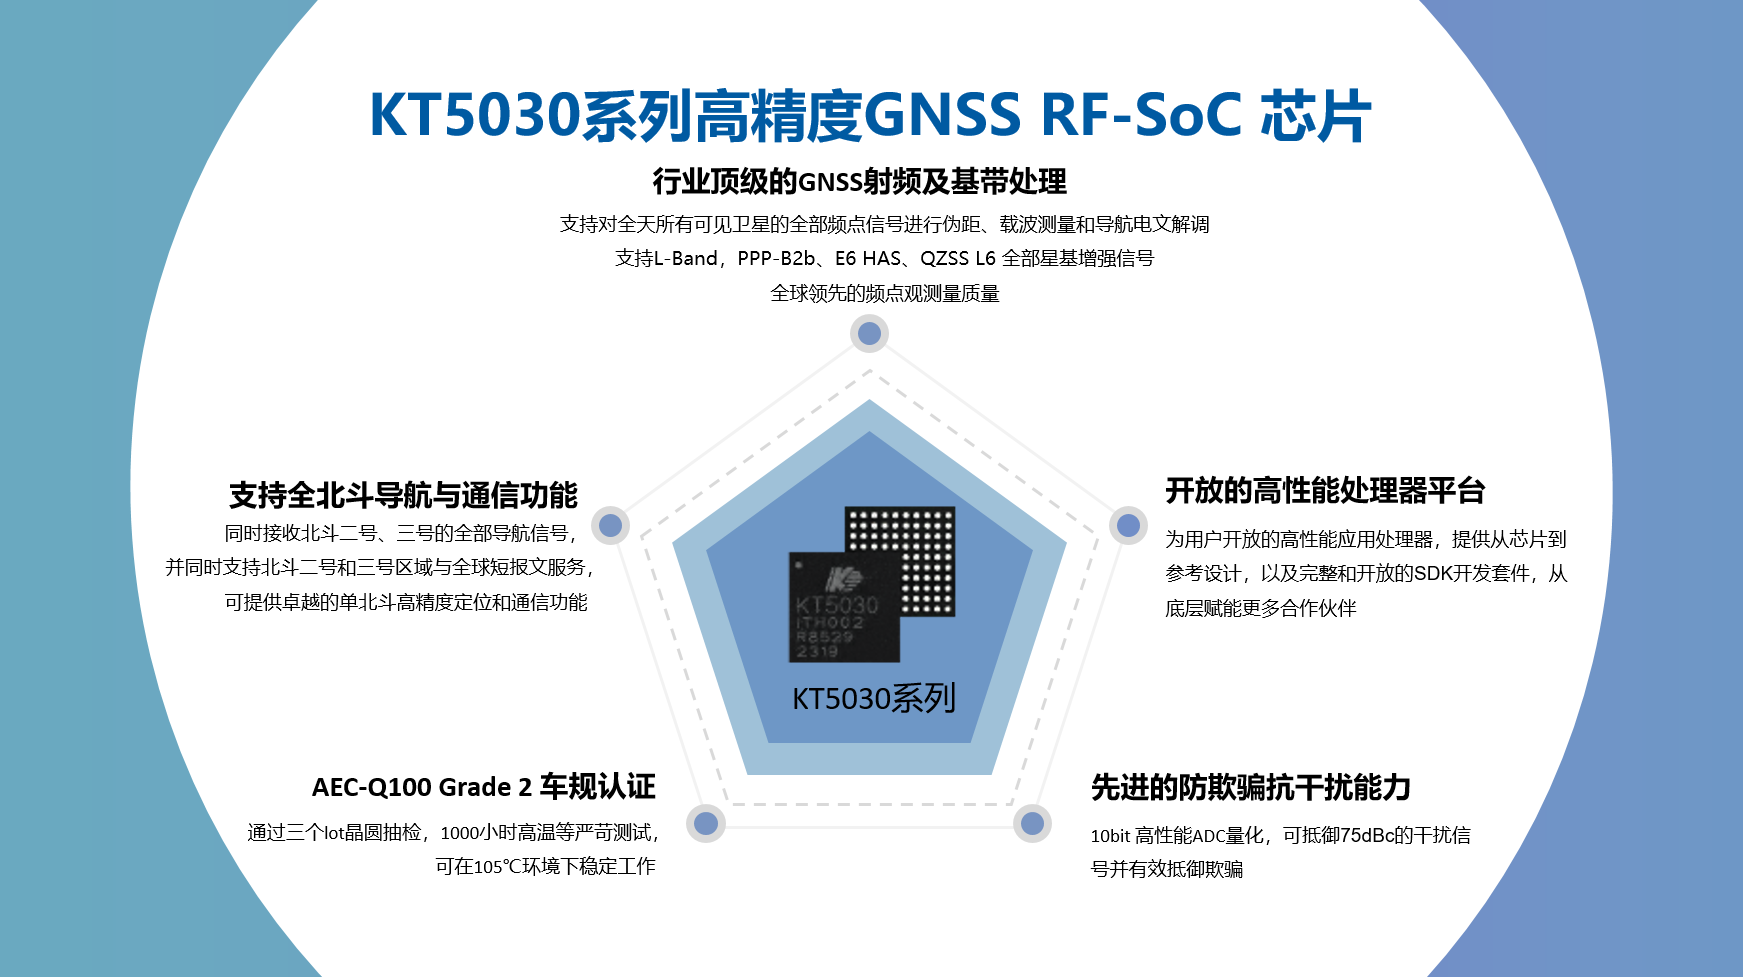 移远通信官宣“全系统+全频段”LG290P，凯芯科技KT5030助力高精度定位应用